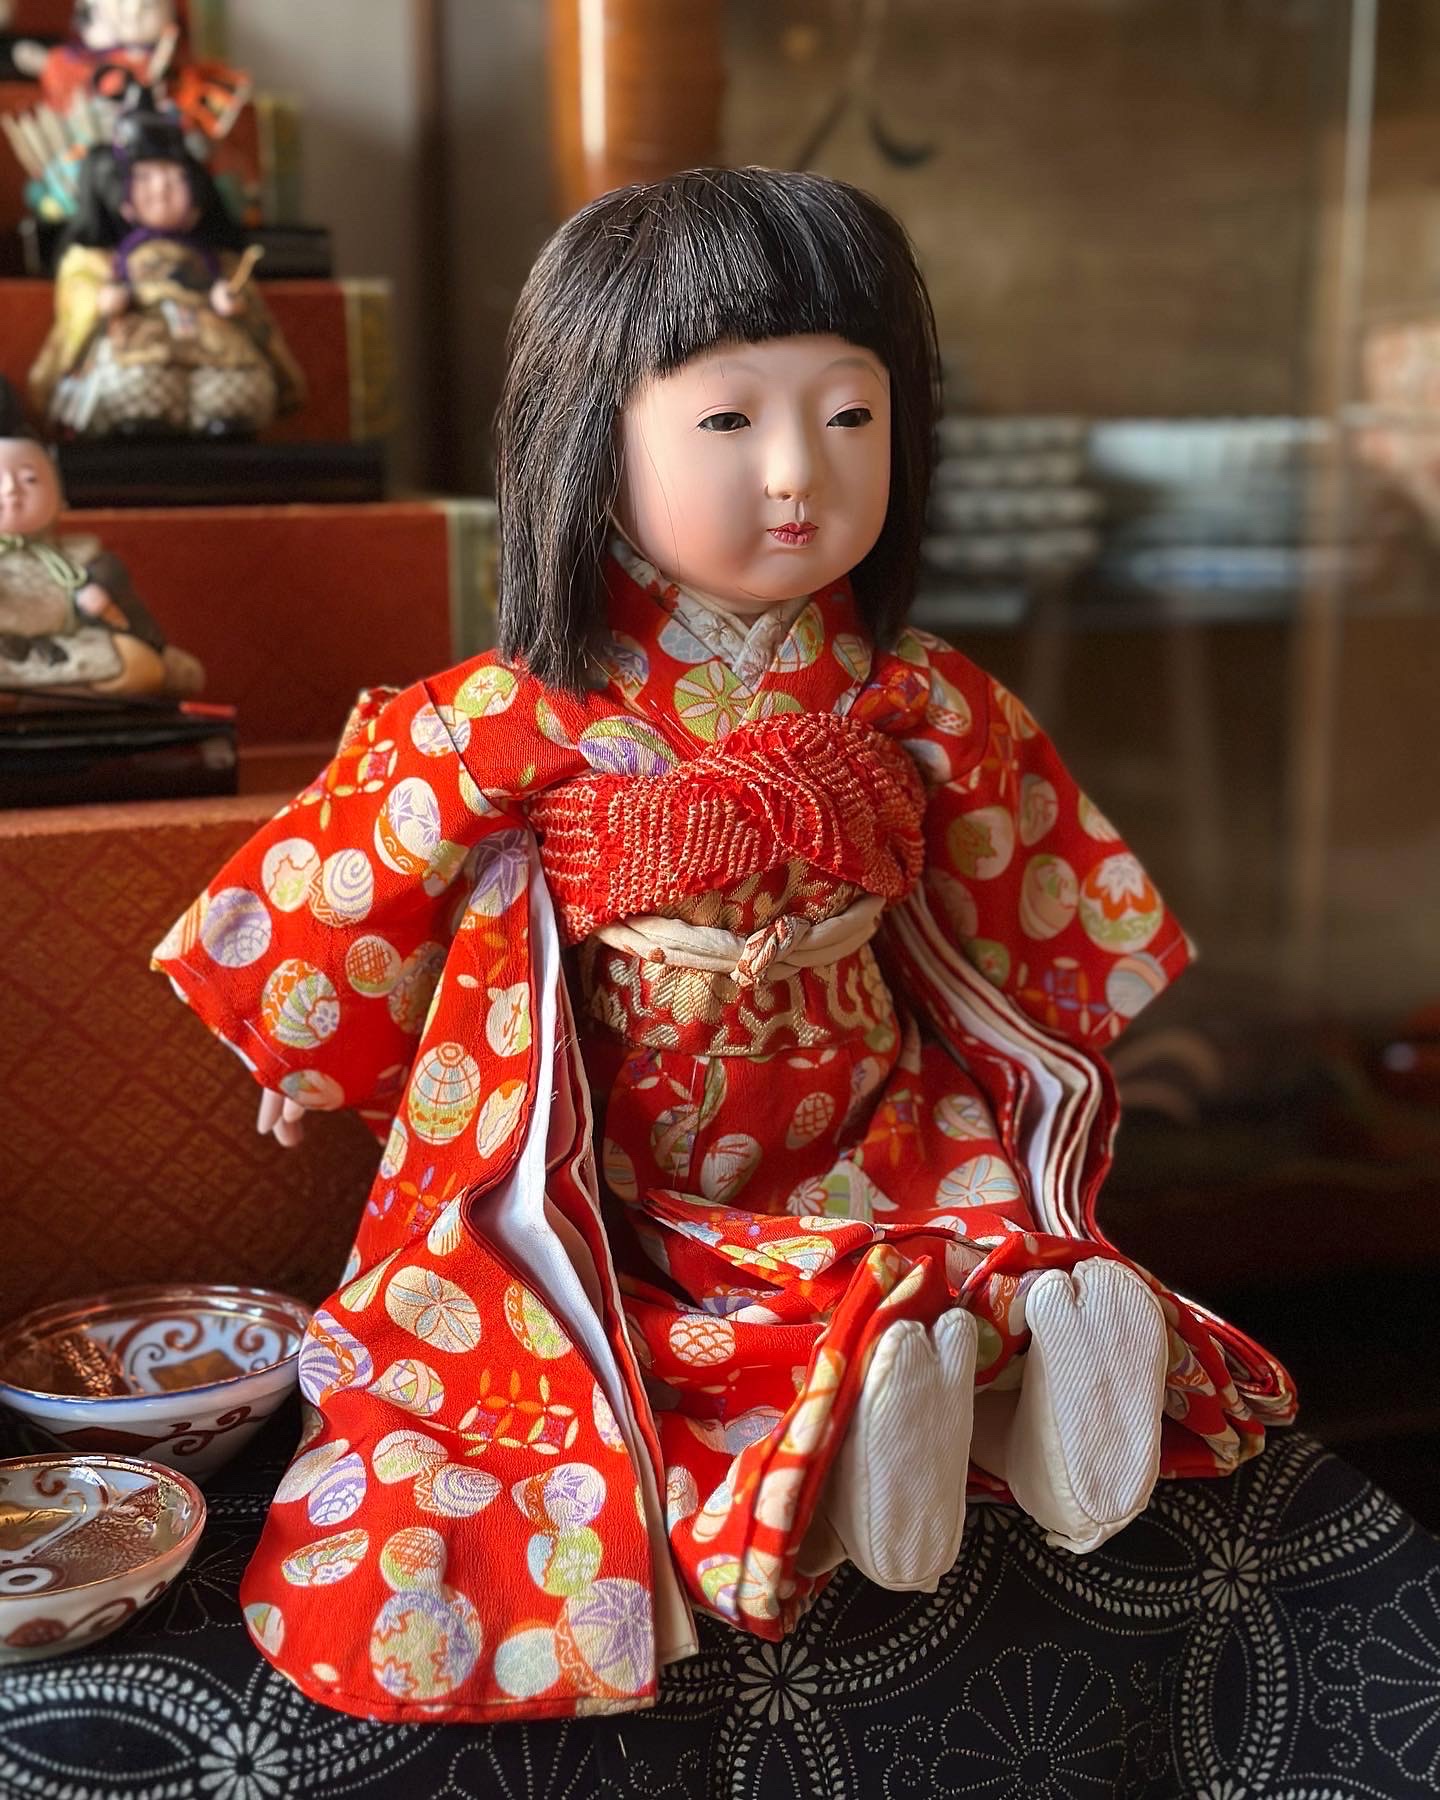 八千代雛 春水 市松人形 - 生活骨董と古布のアンティークショップ 